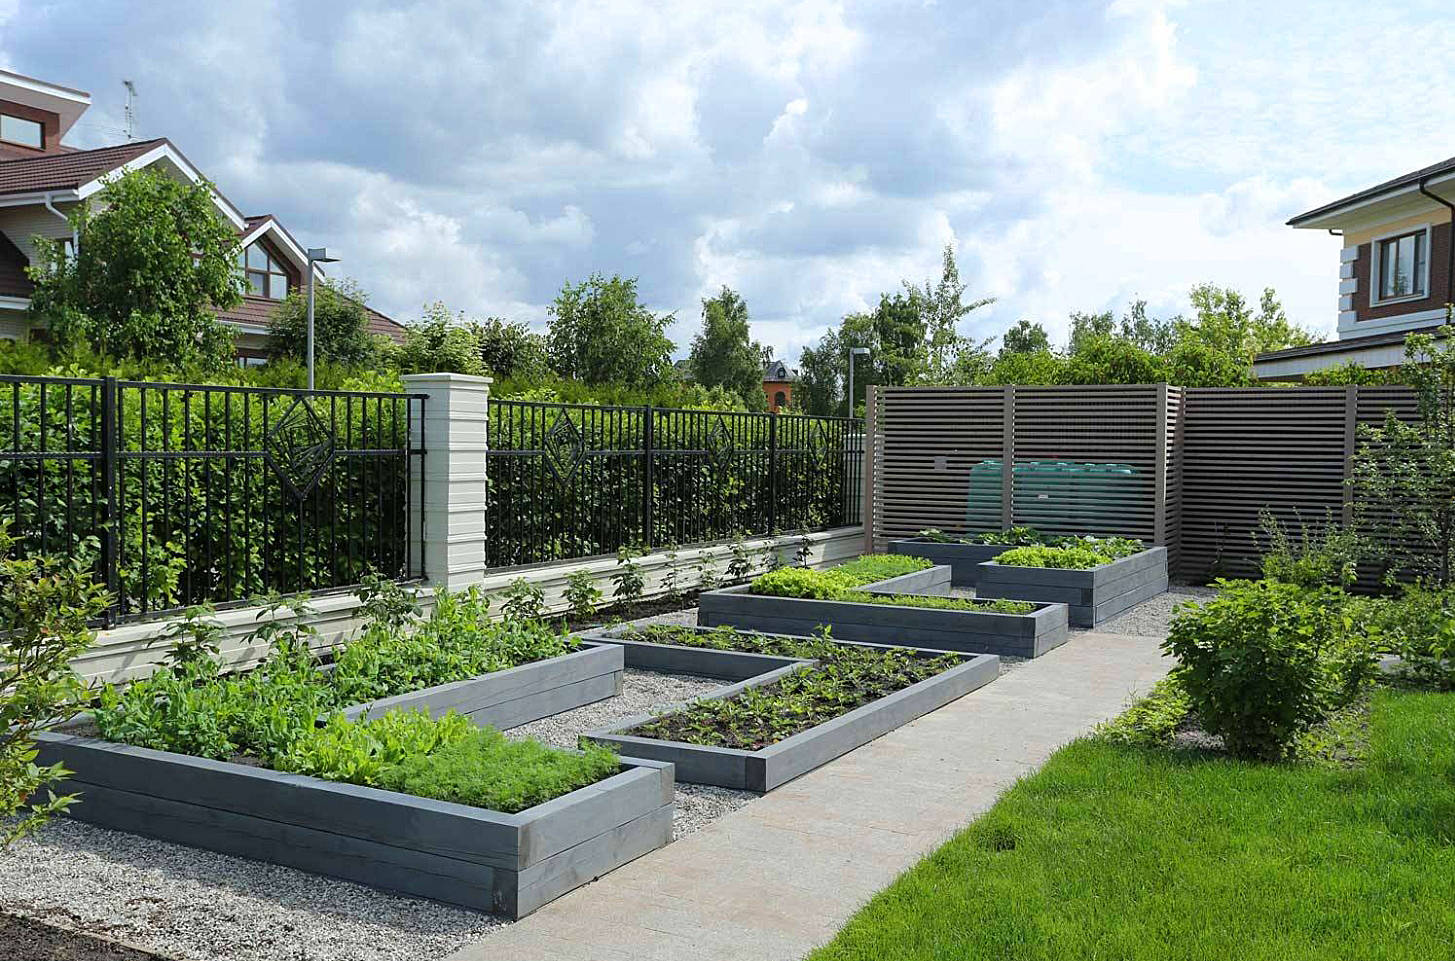 放弃庭院花园,把院子变成菜园子,可以吃自己种的放心蔬菜了